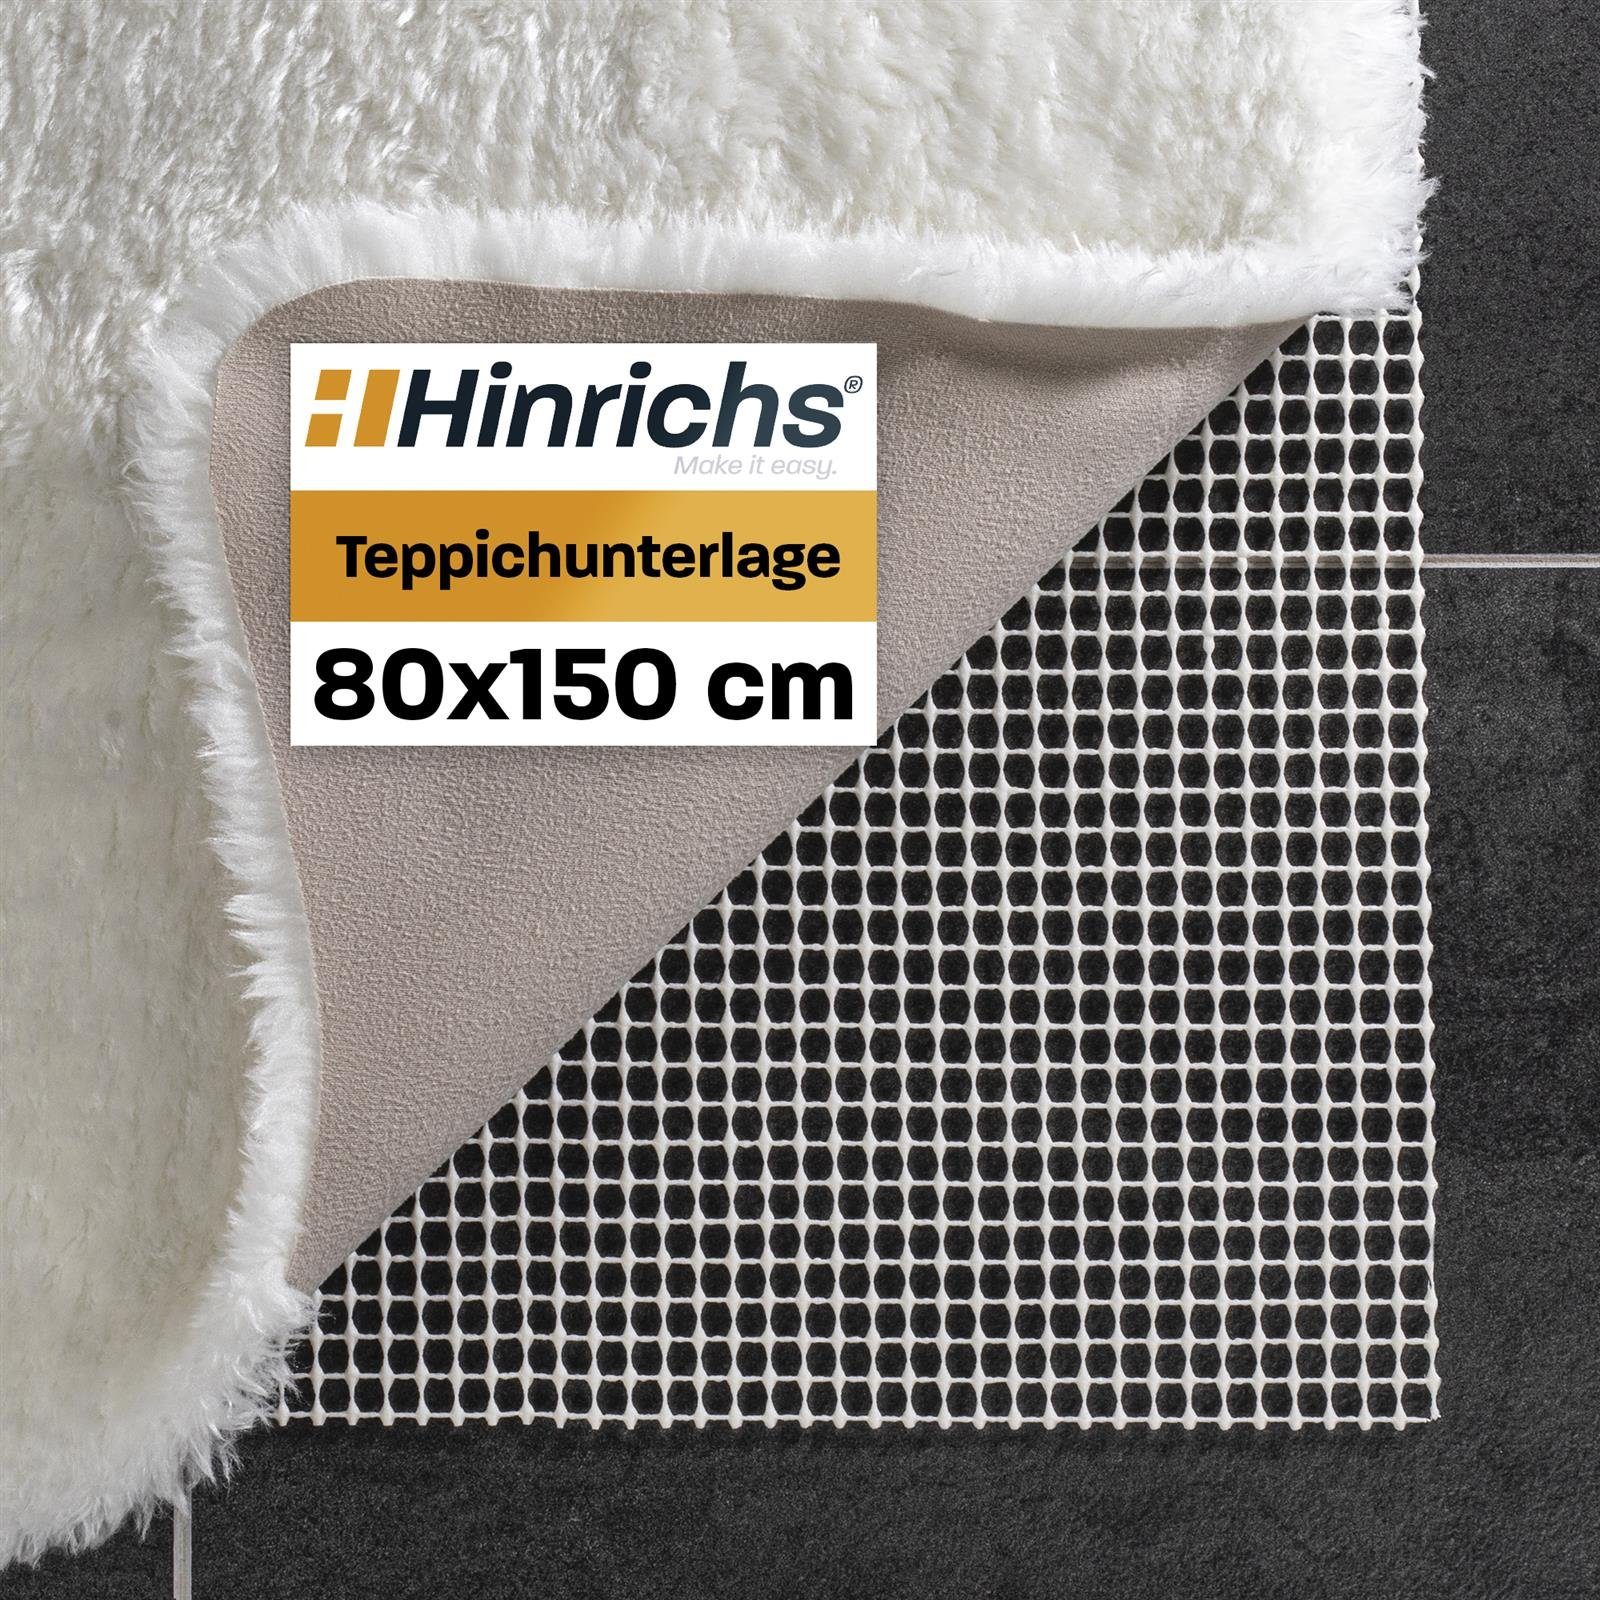 Antirutsch Teppichunterlage Teppich Antirutschmatte 80x150cm, Hinrichs,  Zuschneidbare Teppich Antirutschunterlage inklusive 24 Filzgleiter